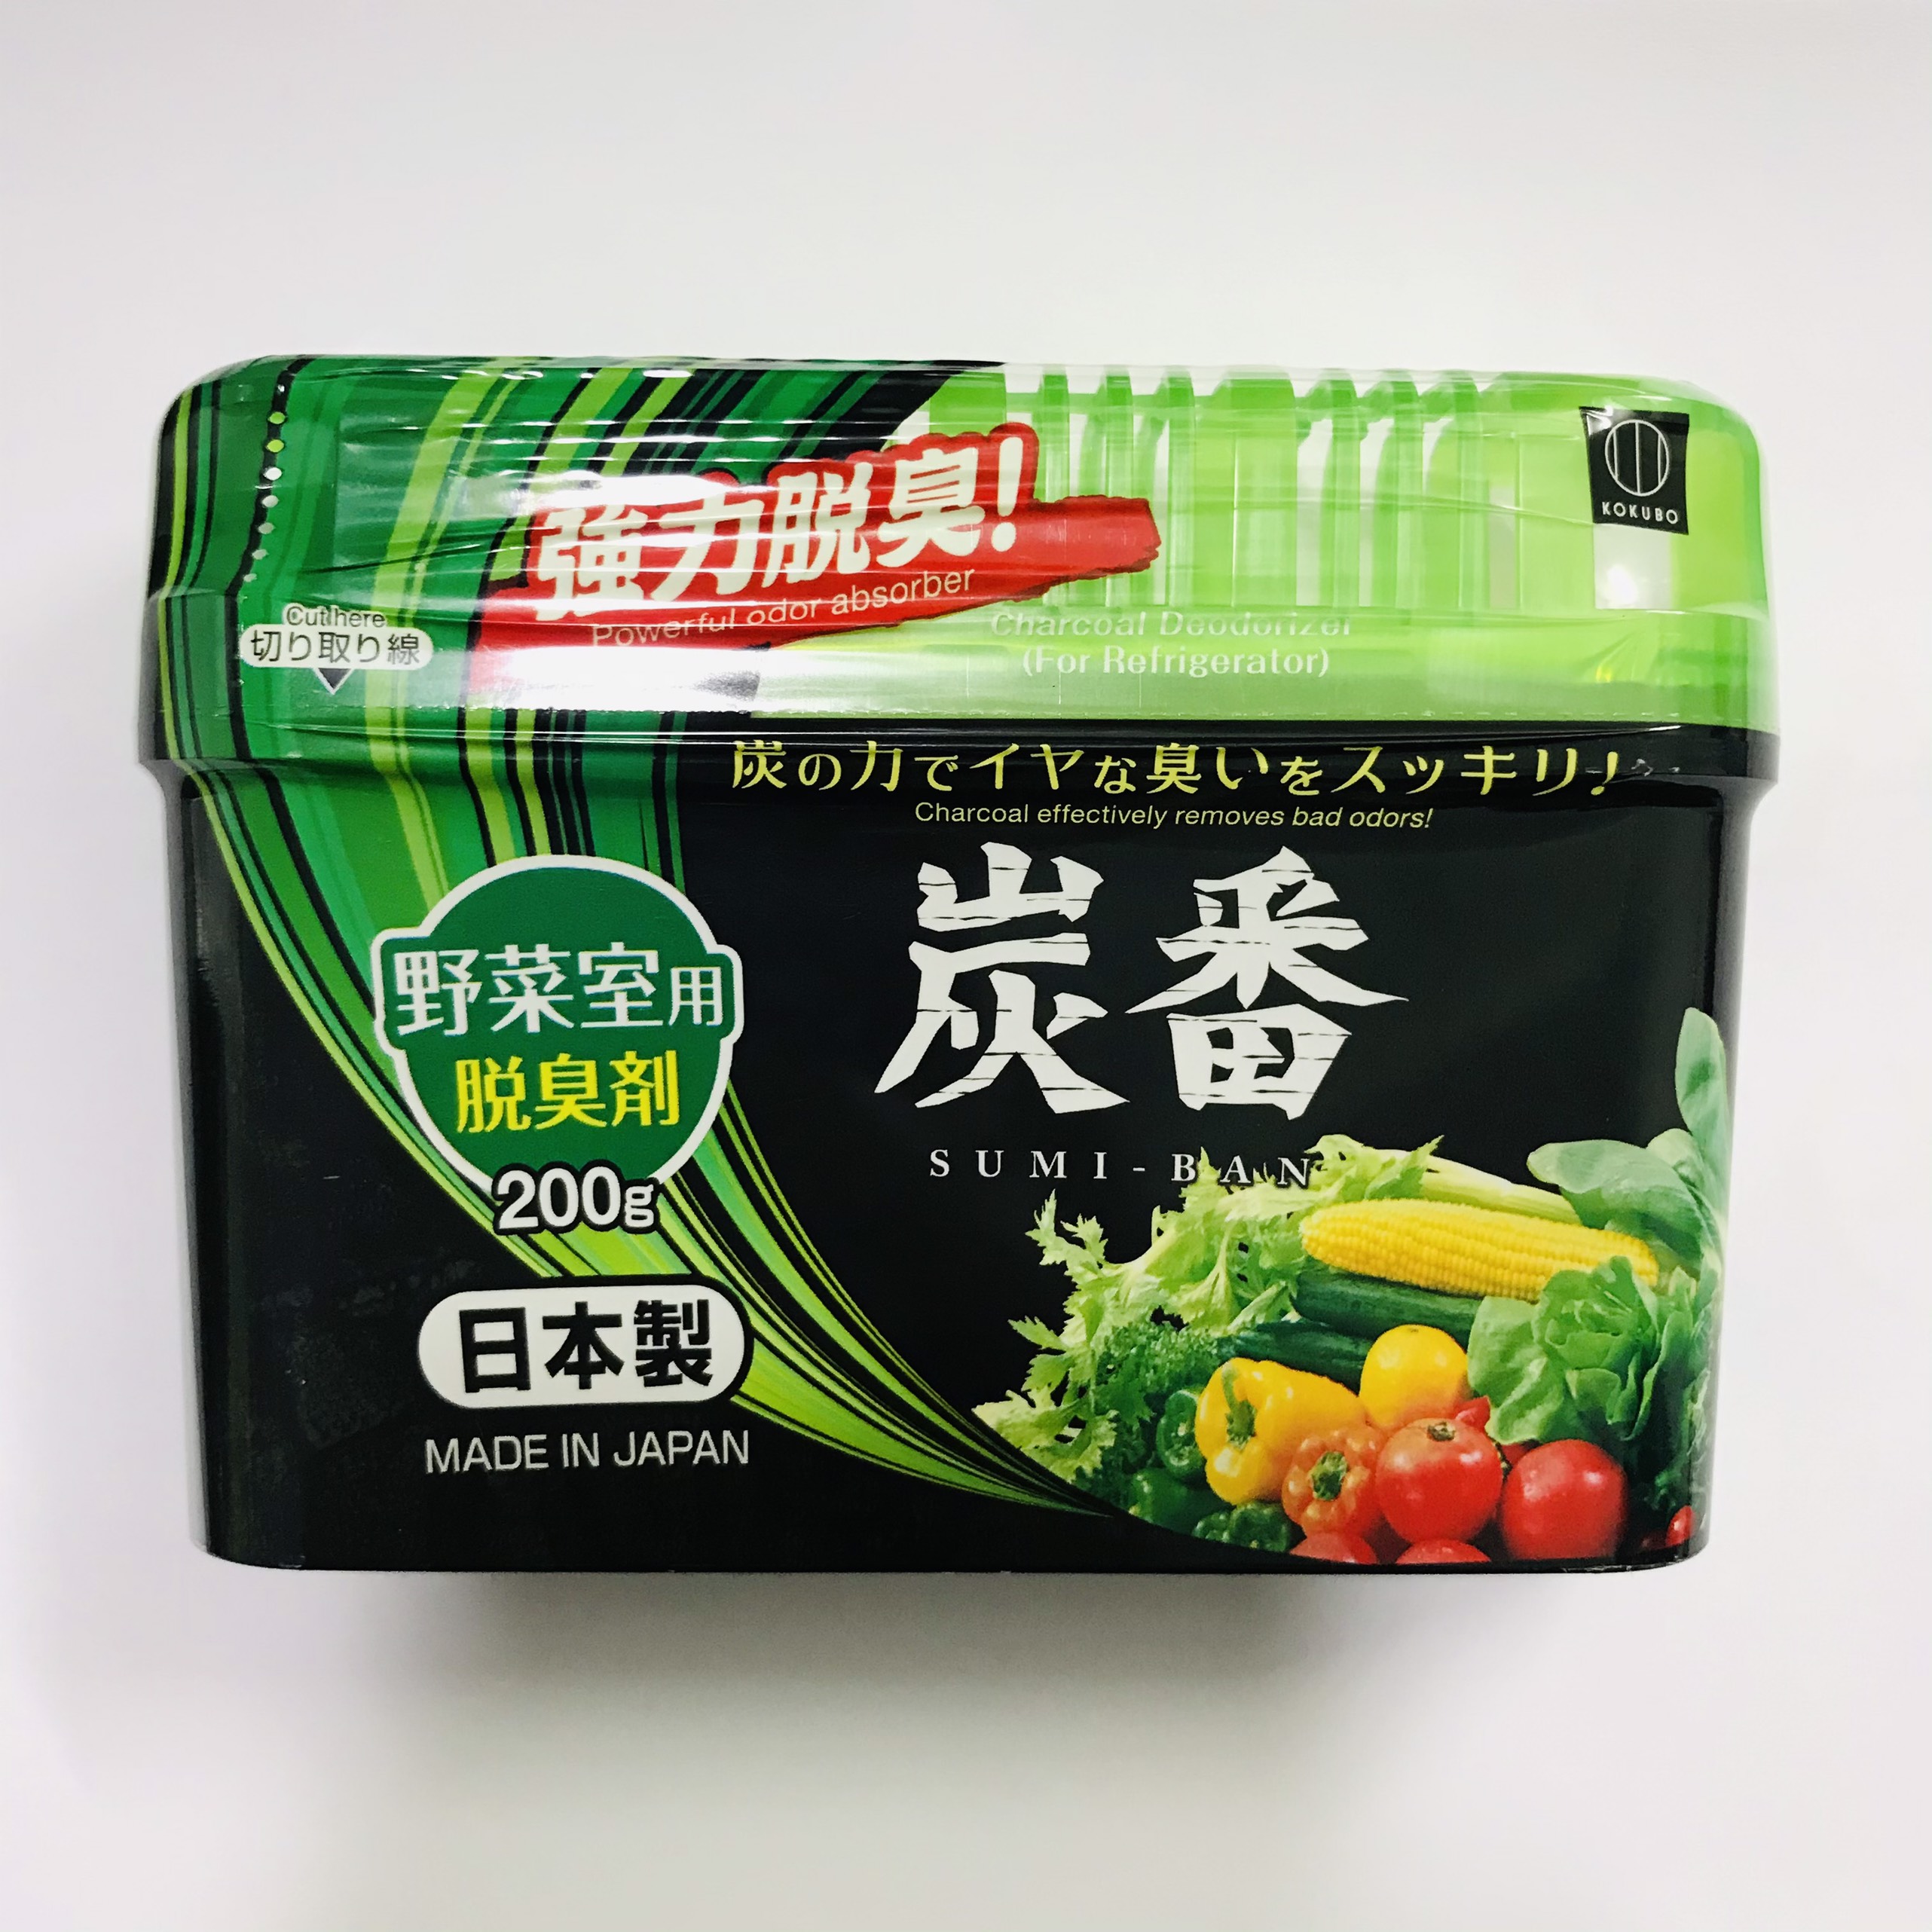 Hộp khử mùi ngăn rau củ tủ lạnh KOKUBO làm từ lá trà xanh 200g